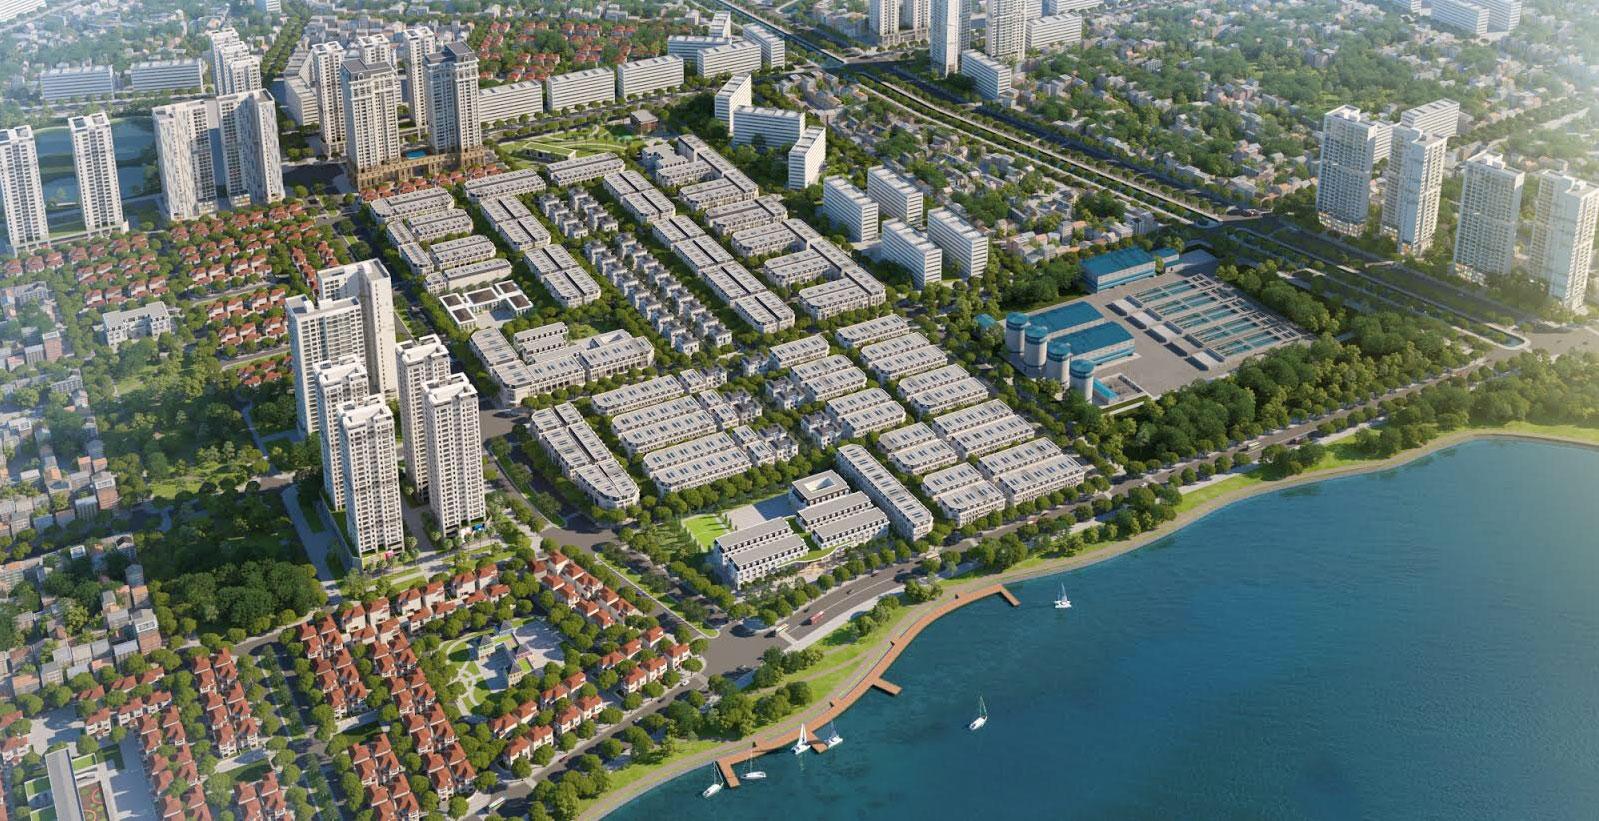 Cen Land (CRE) dự kiến đầu tư 815,3 tỷ đồng mua bất động sản tại Dự án Đầu tư Xây dựng Khu đô thị mới Hoàng Văn Thụ